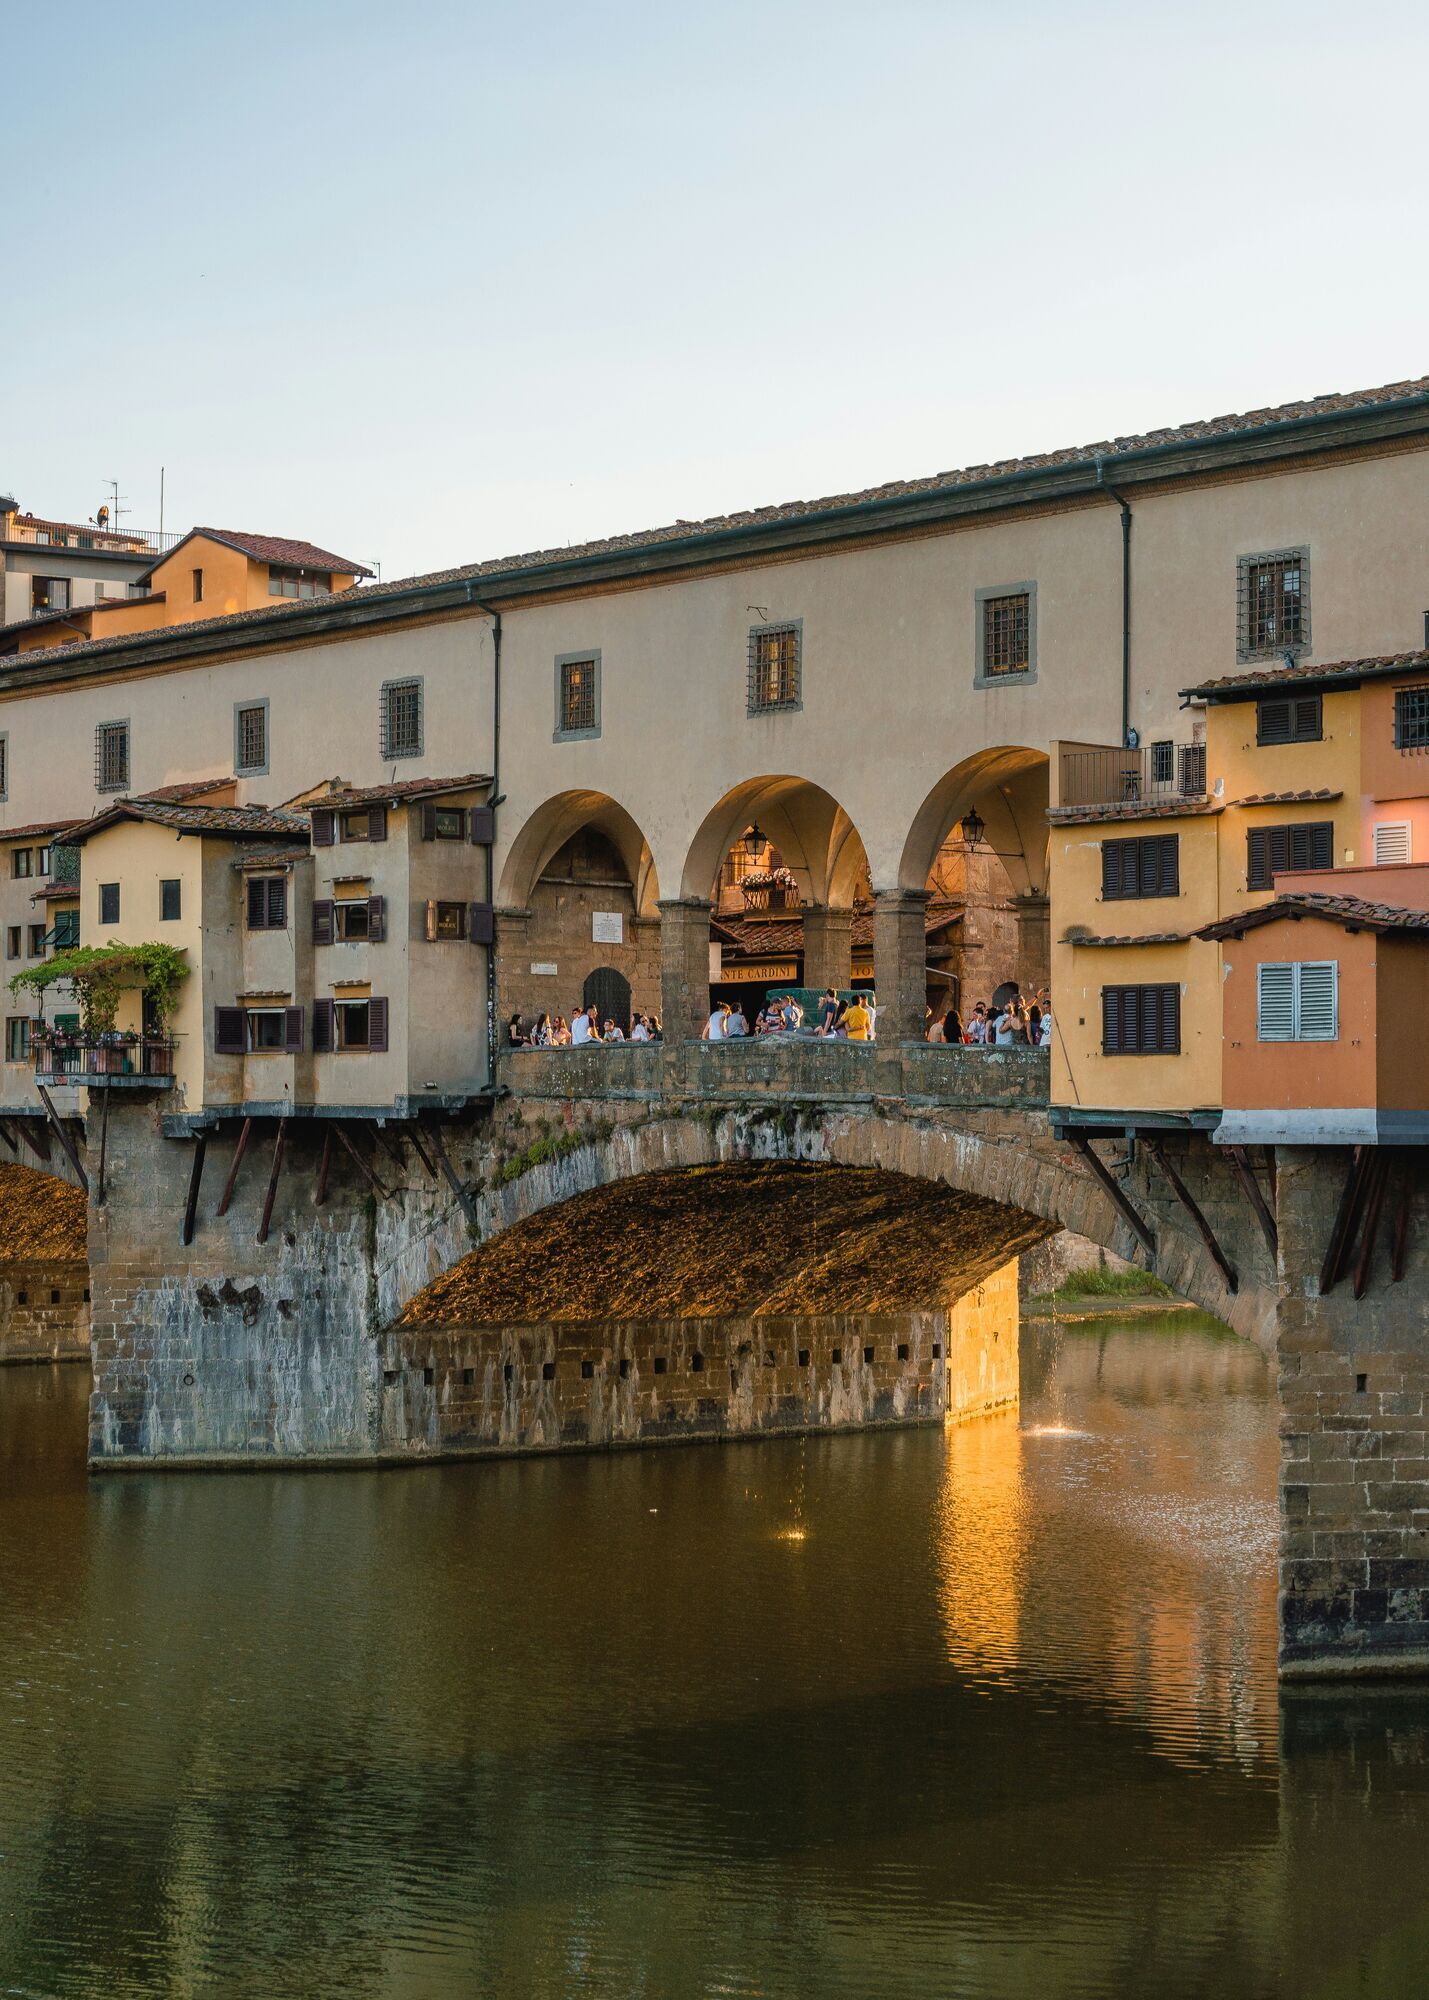 "Туристи перетворили Флоренцію на повію": директорка італійського музею родом із Німеччини спровокувала гучний скандал